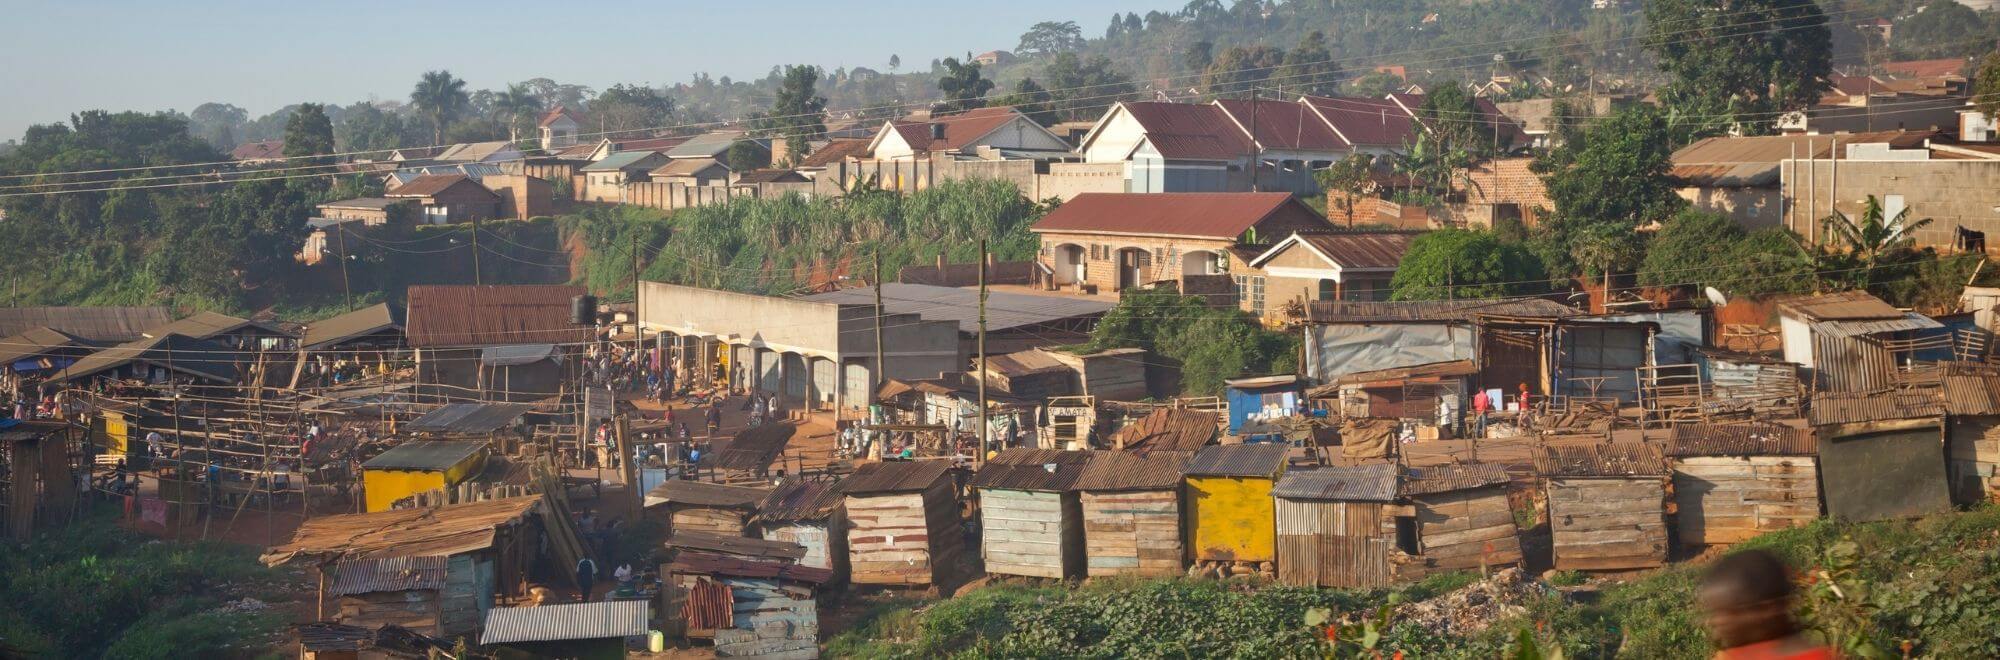 a neighborhood in uganda